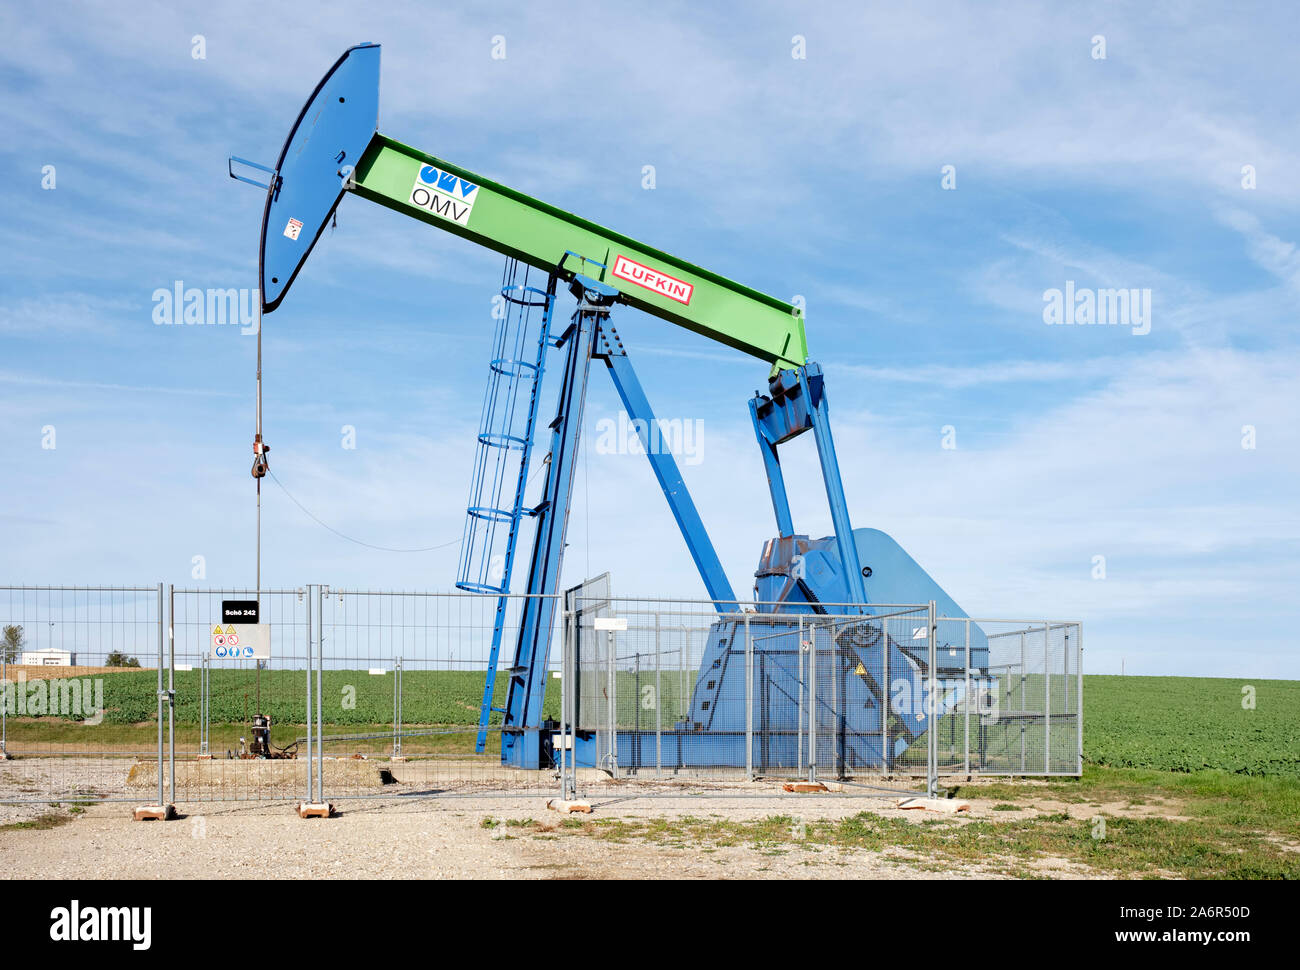 OMV pump jack mining crude oil in the Weinviertel region of lower Austria (Niederosterreich) Stock Photo